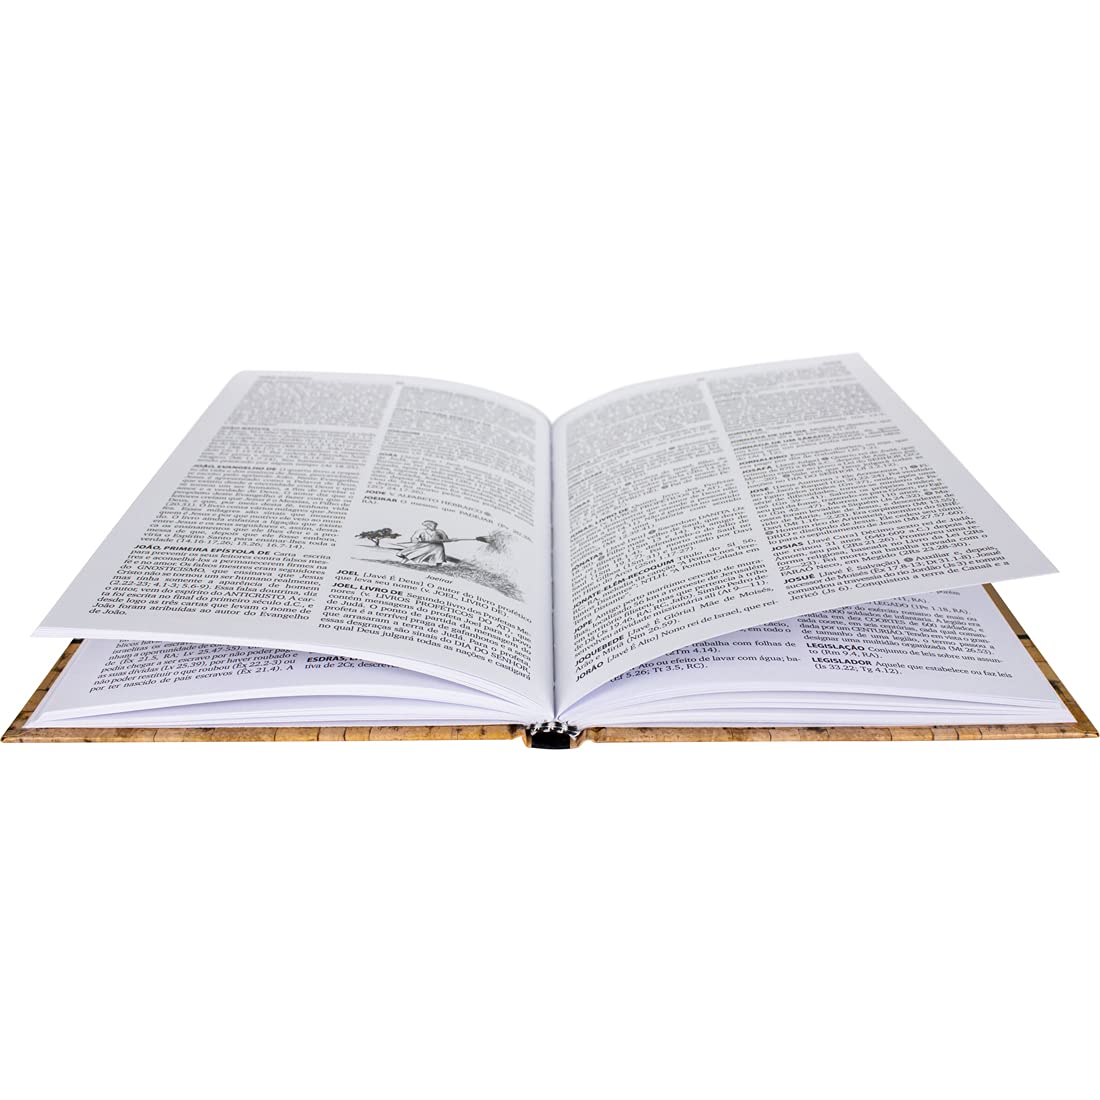 Dicionário da Bíblia de Almeida  2ª Edição: Almeida Revista e Corrigida (ARC) - Edição Acadêmica